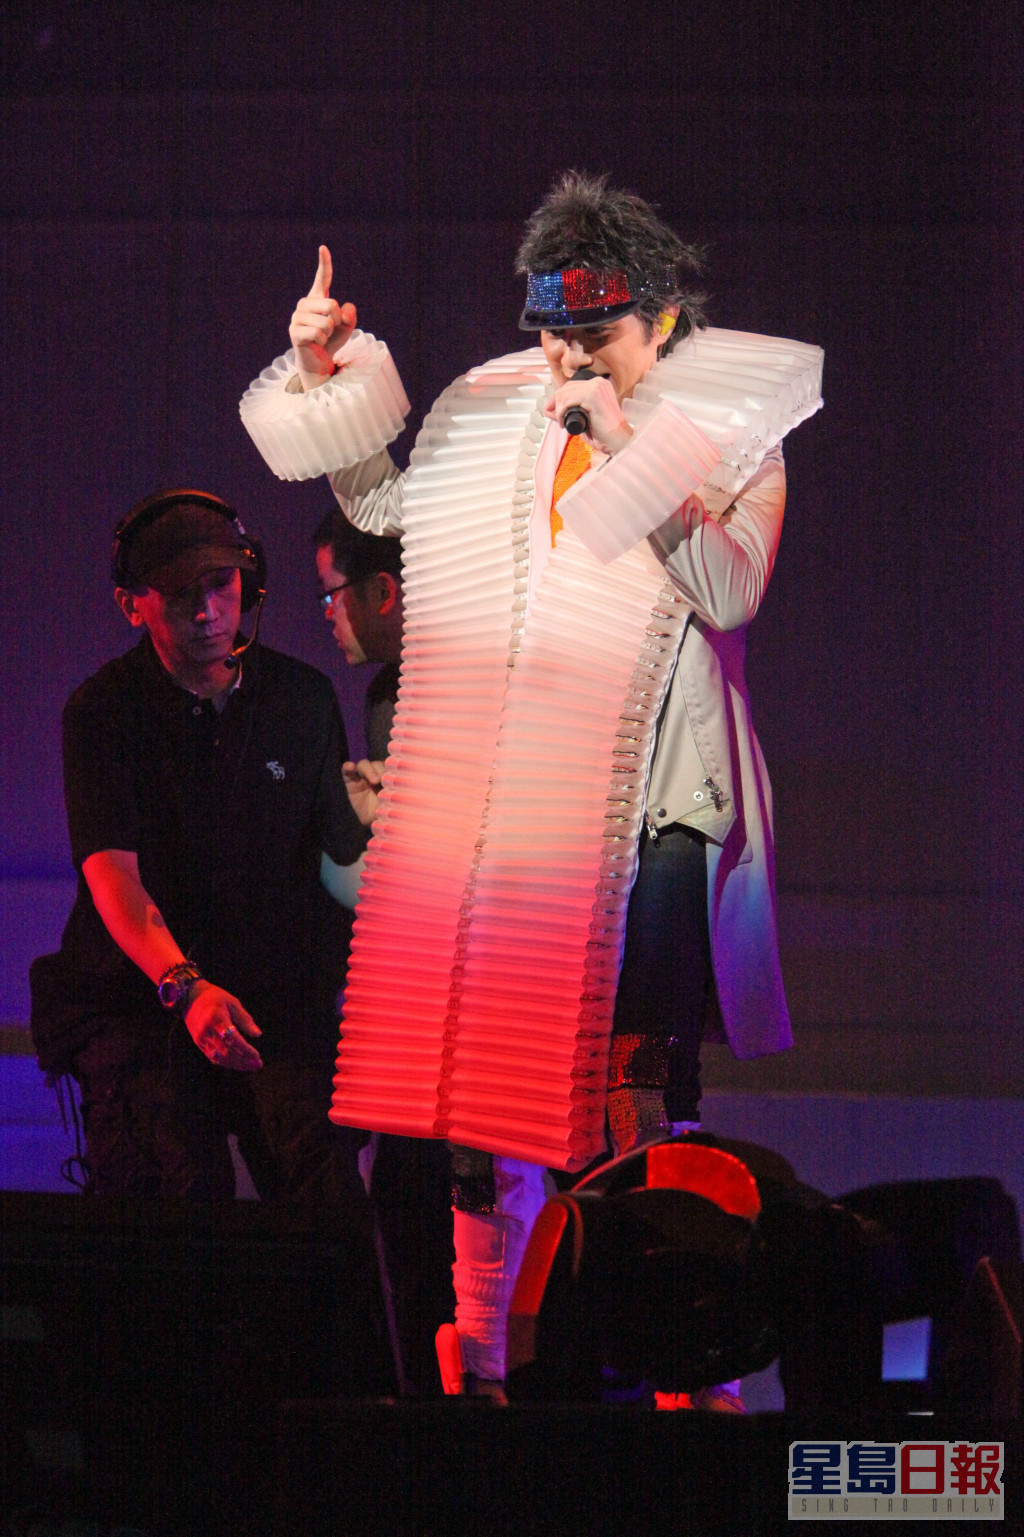 2009年古巨基在紅館舉個唱，基仔聲控衣服突然冒煙。